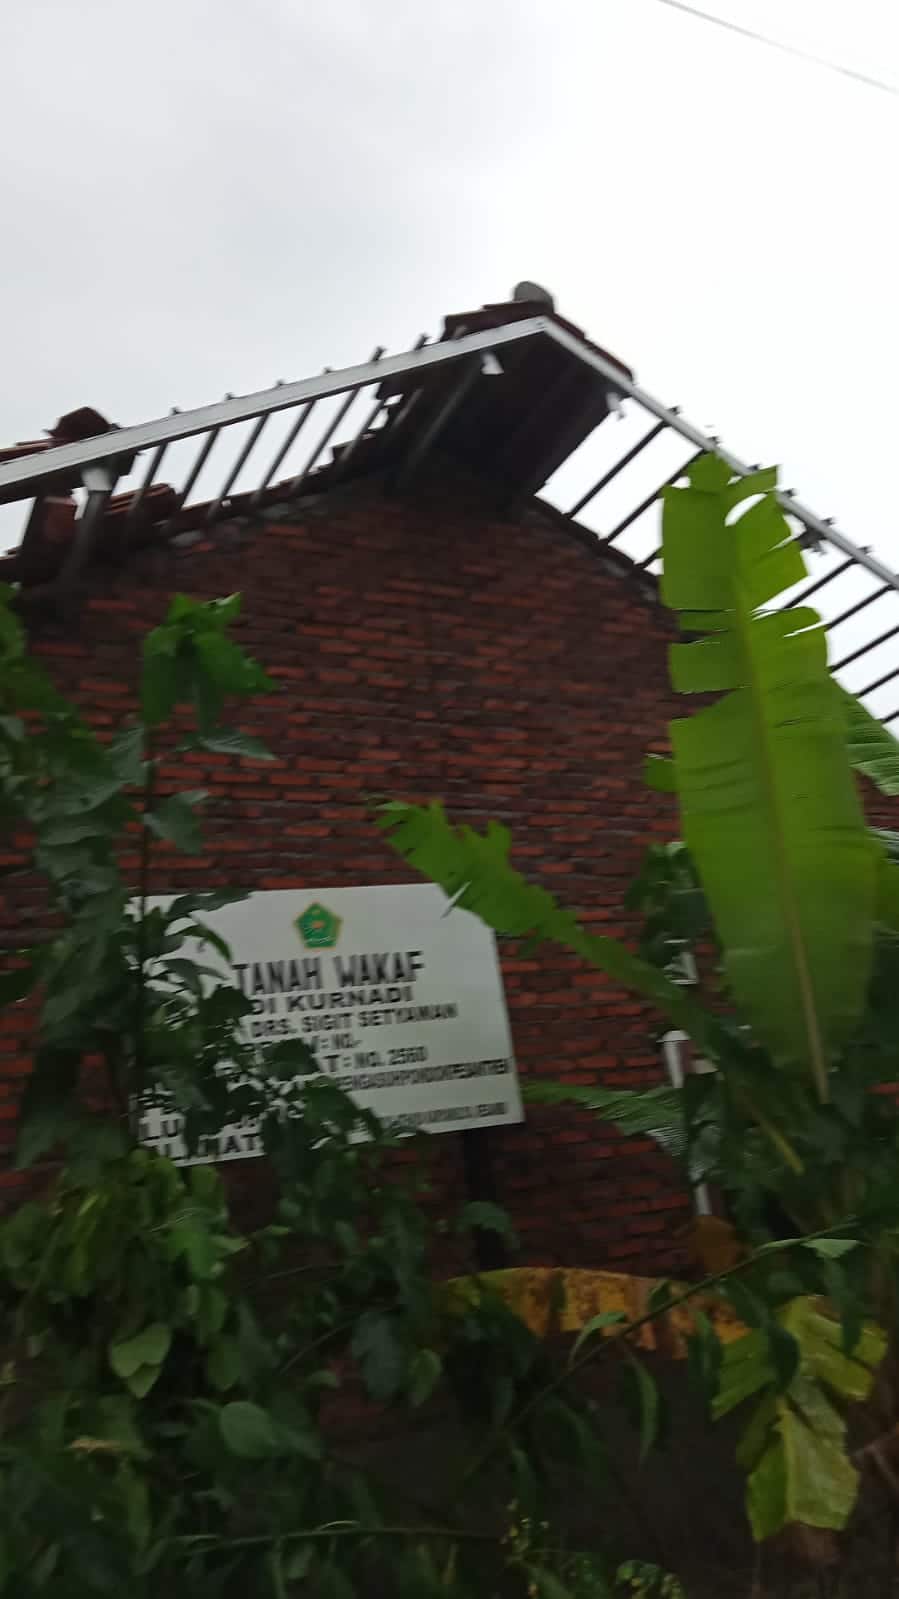 2 Rumah Pengurus Yayasan Manarussalam dan ruang kelas MTs di Kota Cirebon Diterjang Badai